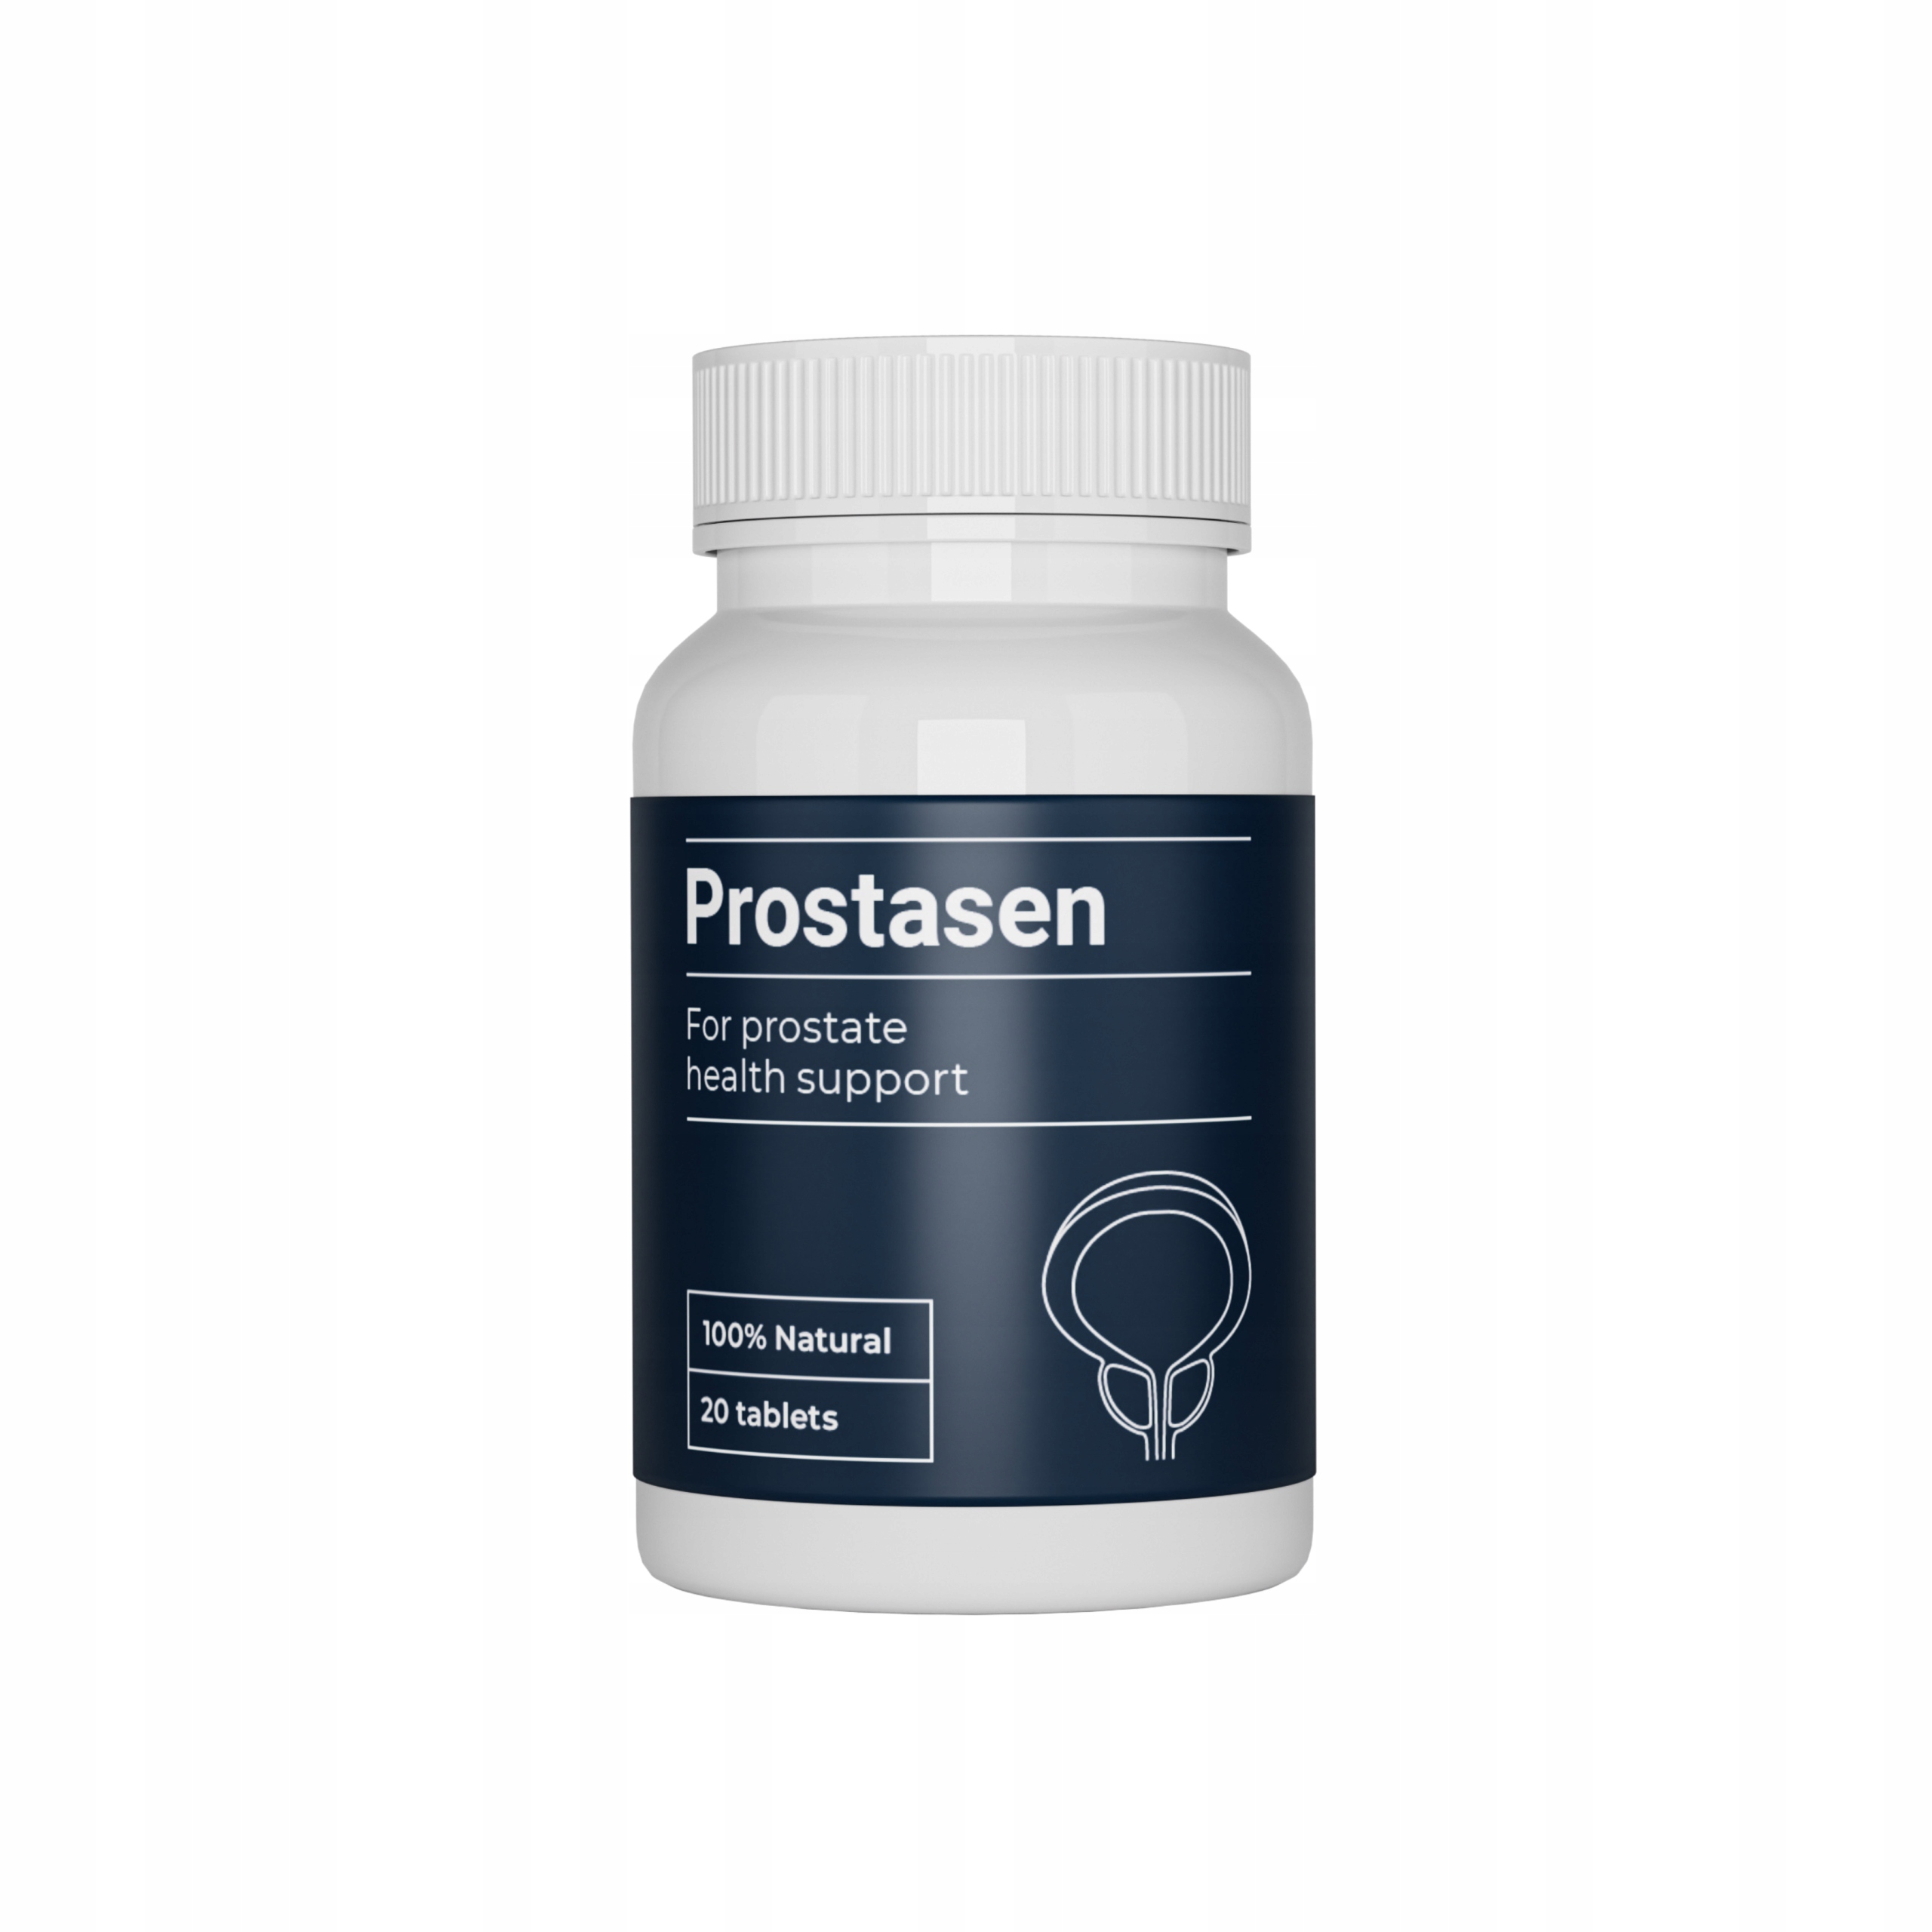 Prostasen - apotheke - erfahrungen - test - bewertung - preis - kaufen